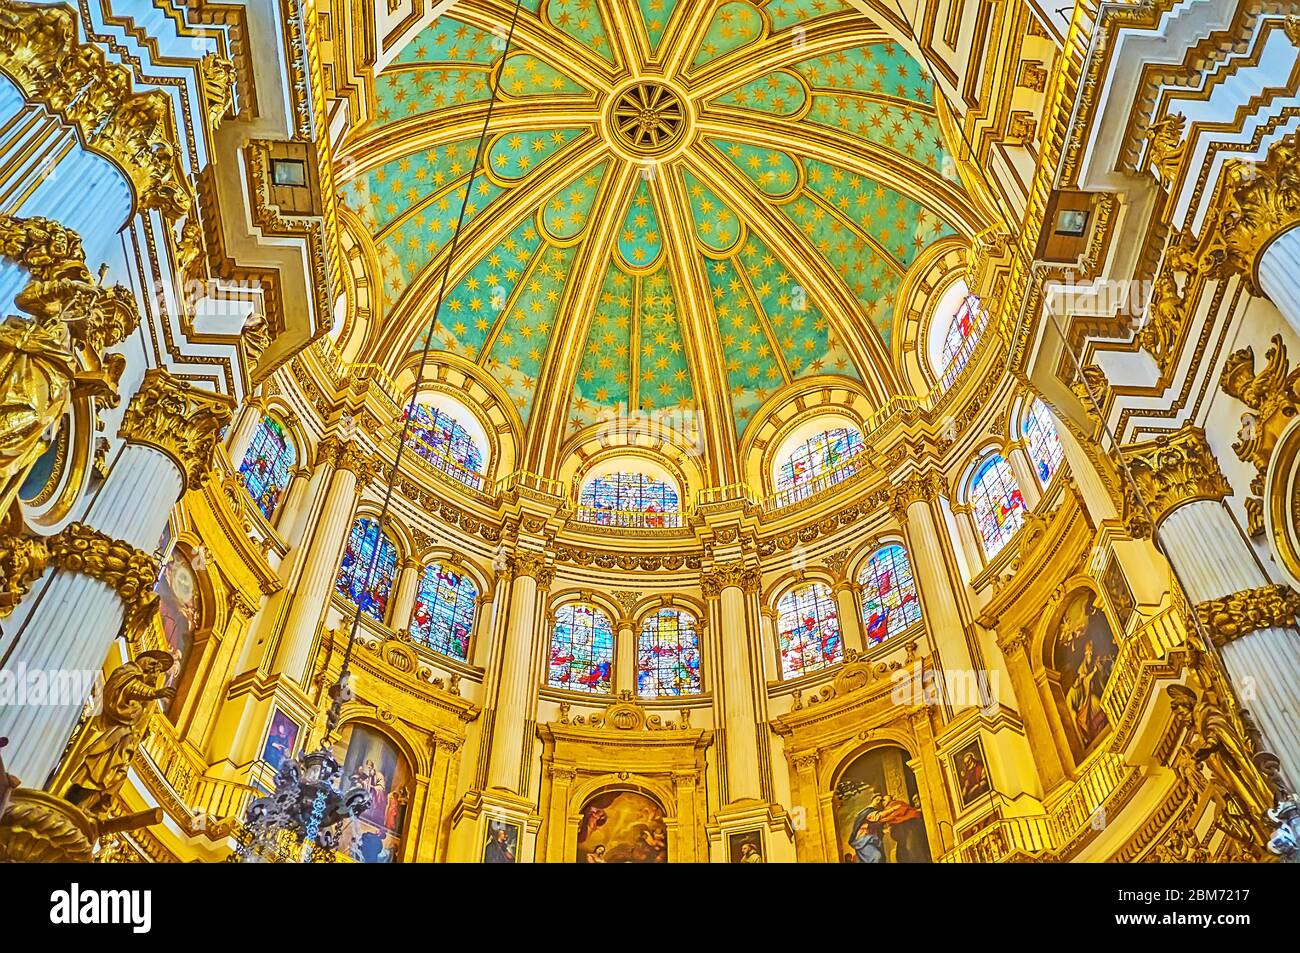 GRANADA, SPAGNA - 25 SETTEMBRE 2019: La cupola ornata della Cappella principale della Cattedrale è circondata da vetrate capolavoro, il 25 settembre Foto Stock